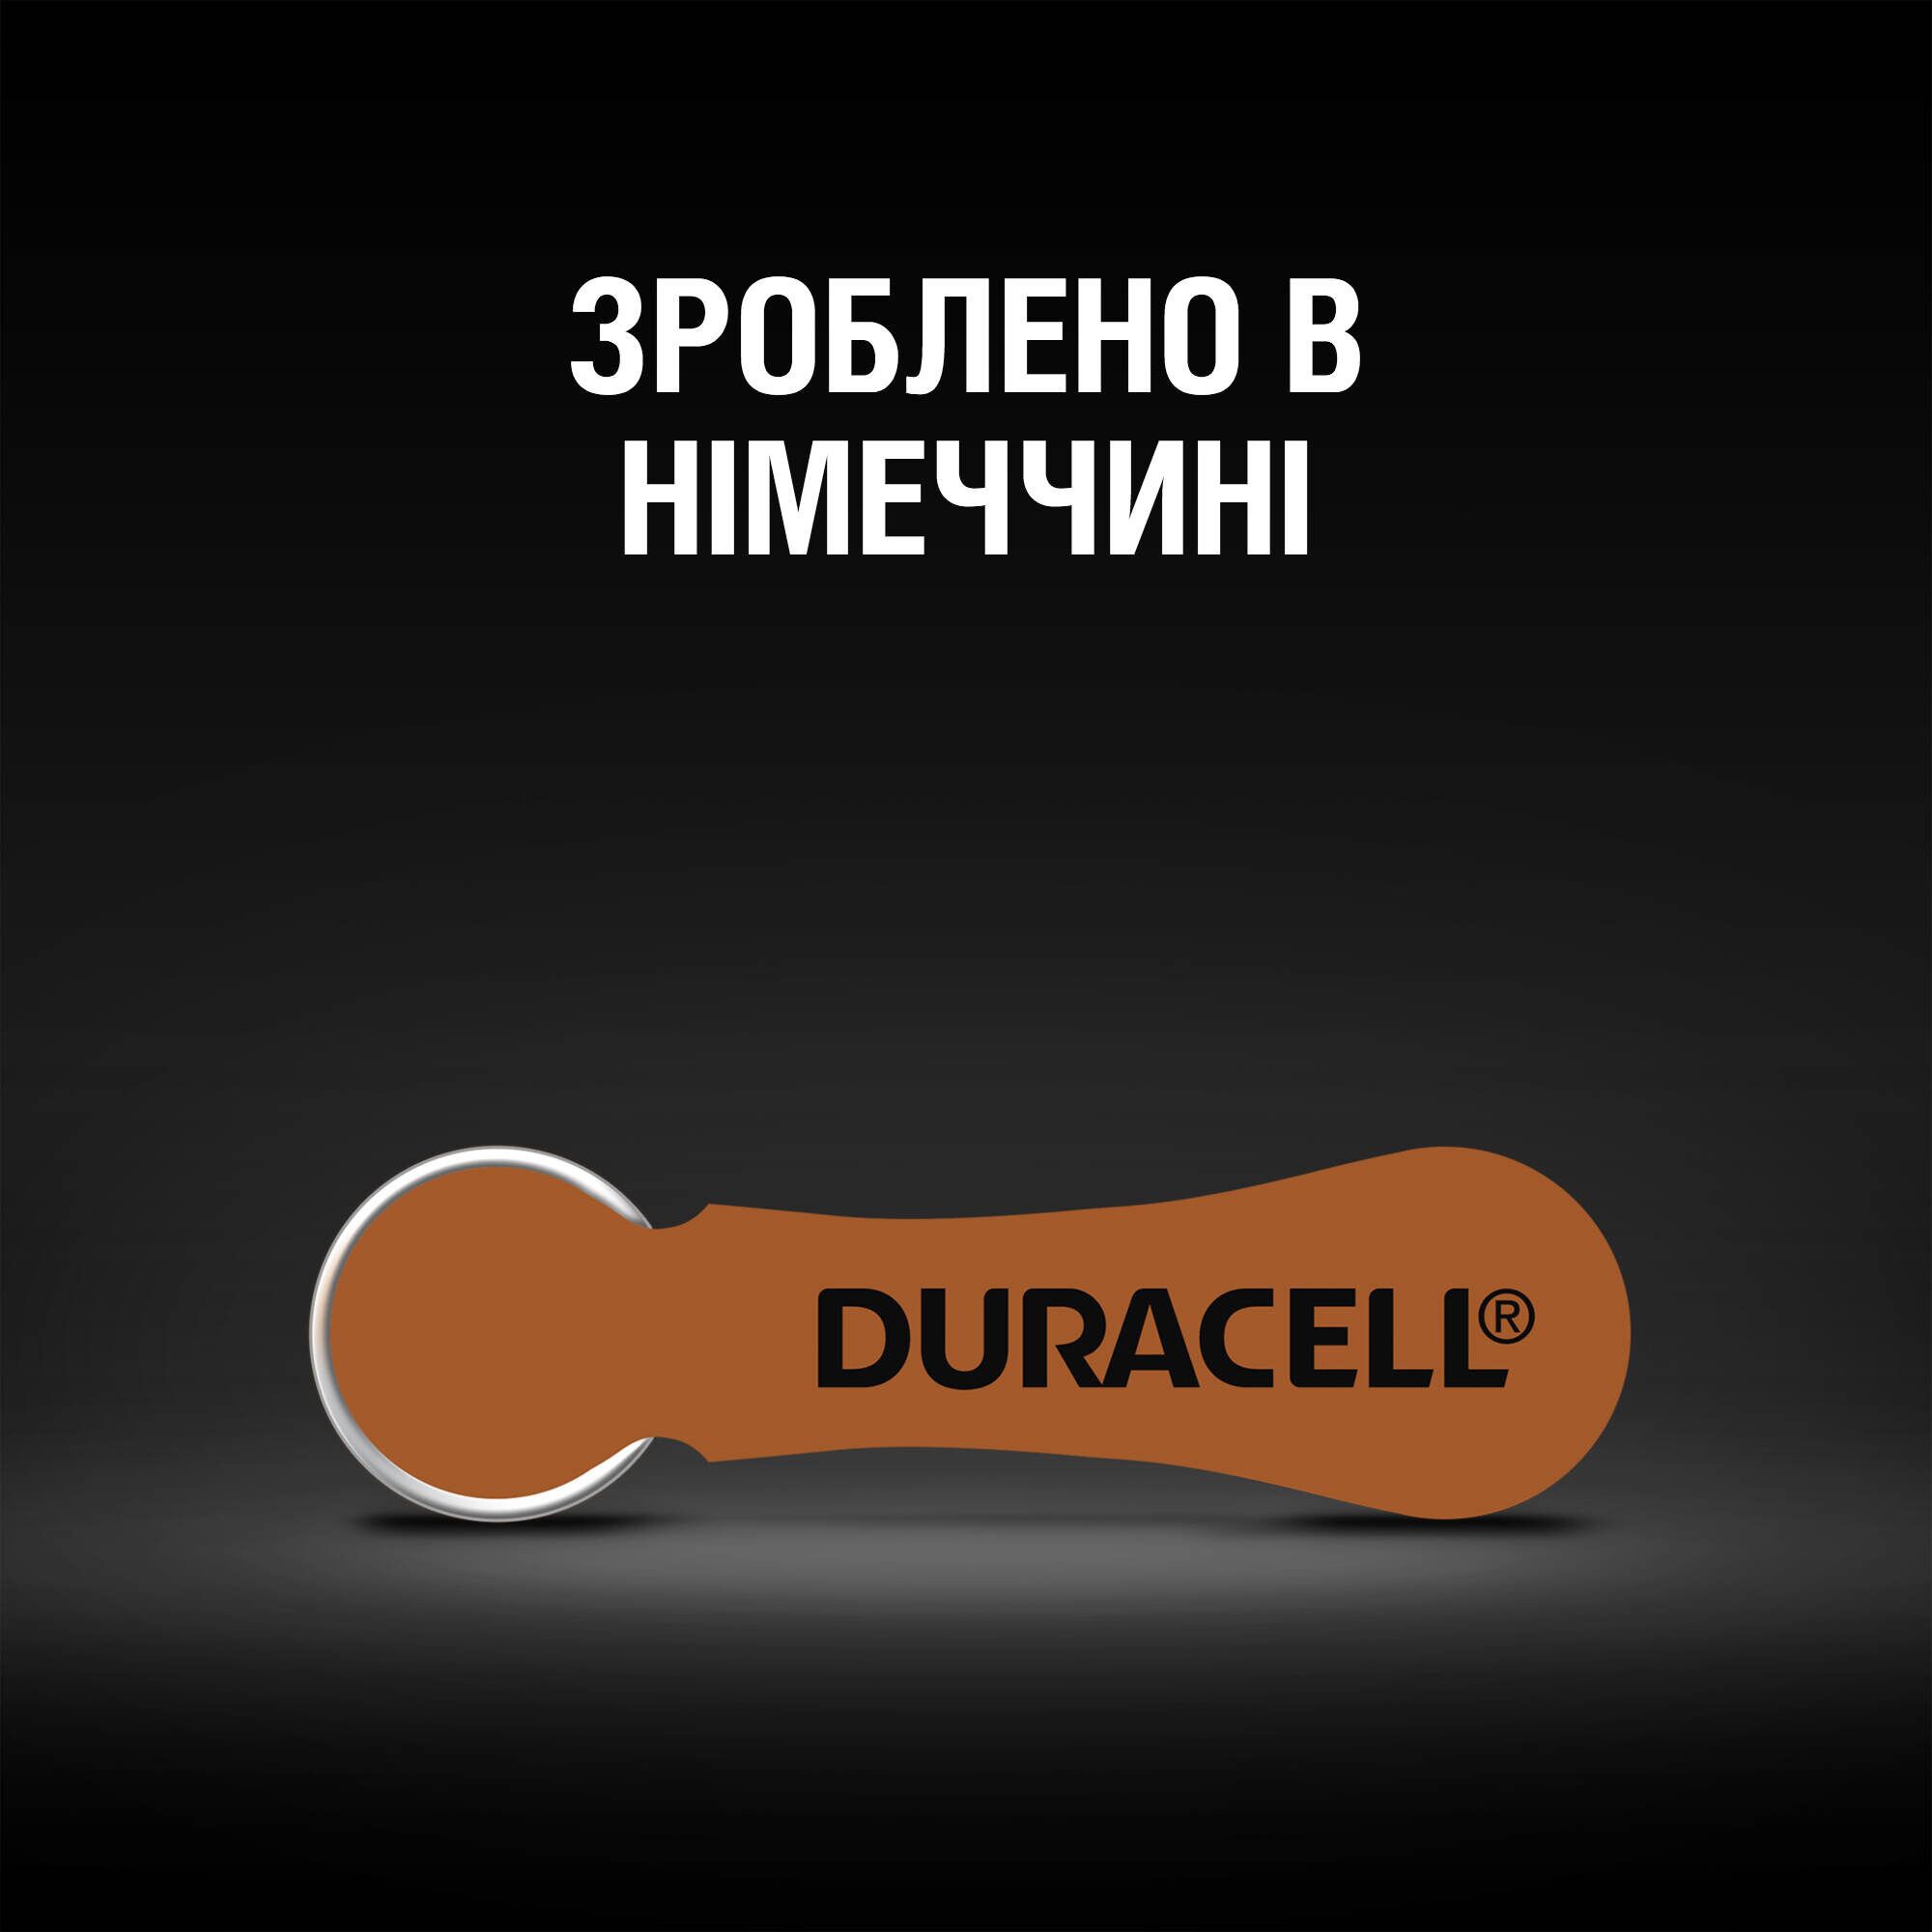 Батарейка Duracell Hearing Aid 312 6 шт. (96091463) инструкция - изображение 6